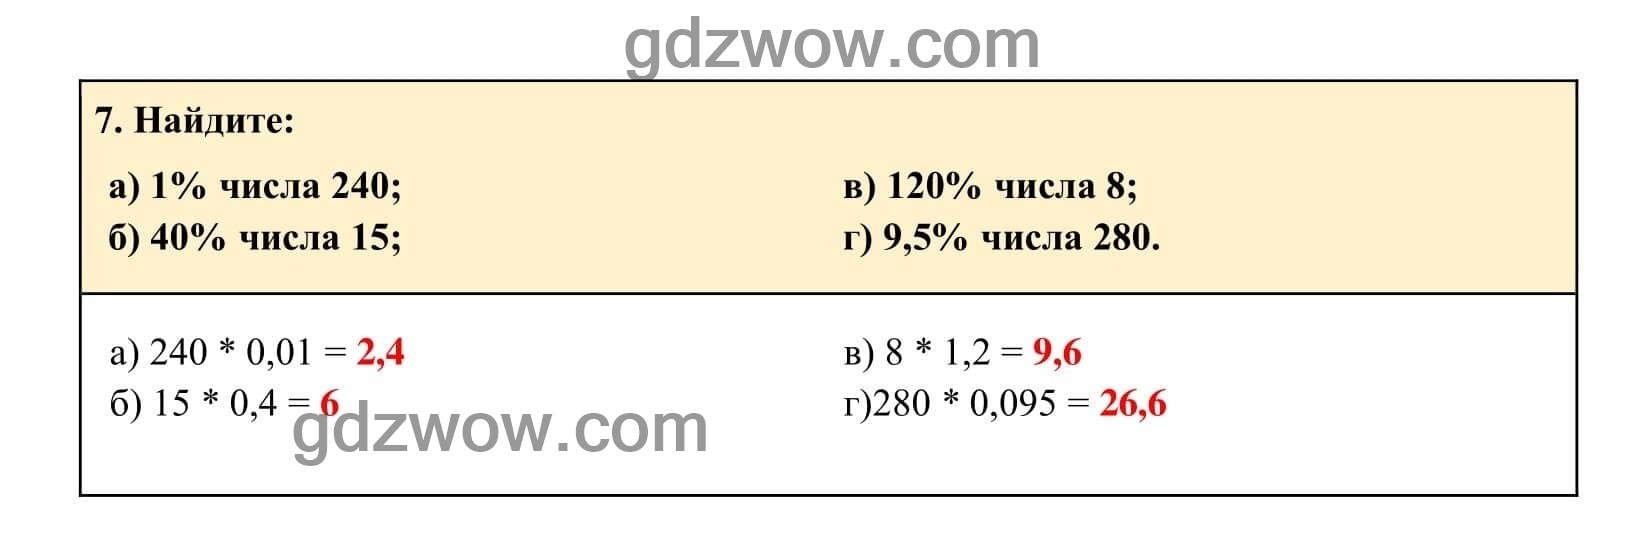 Упражнение 7 - ГДЗ по Алгебре 7 класс Учебник Макарычев (решебник) - GDZwow